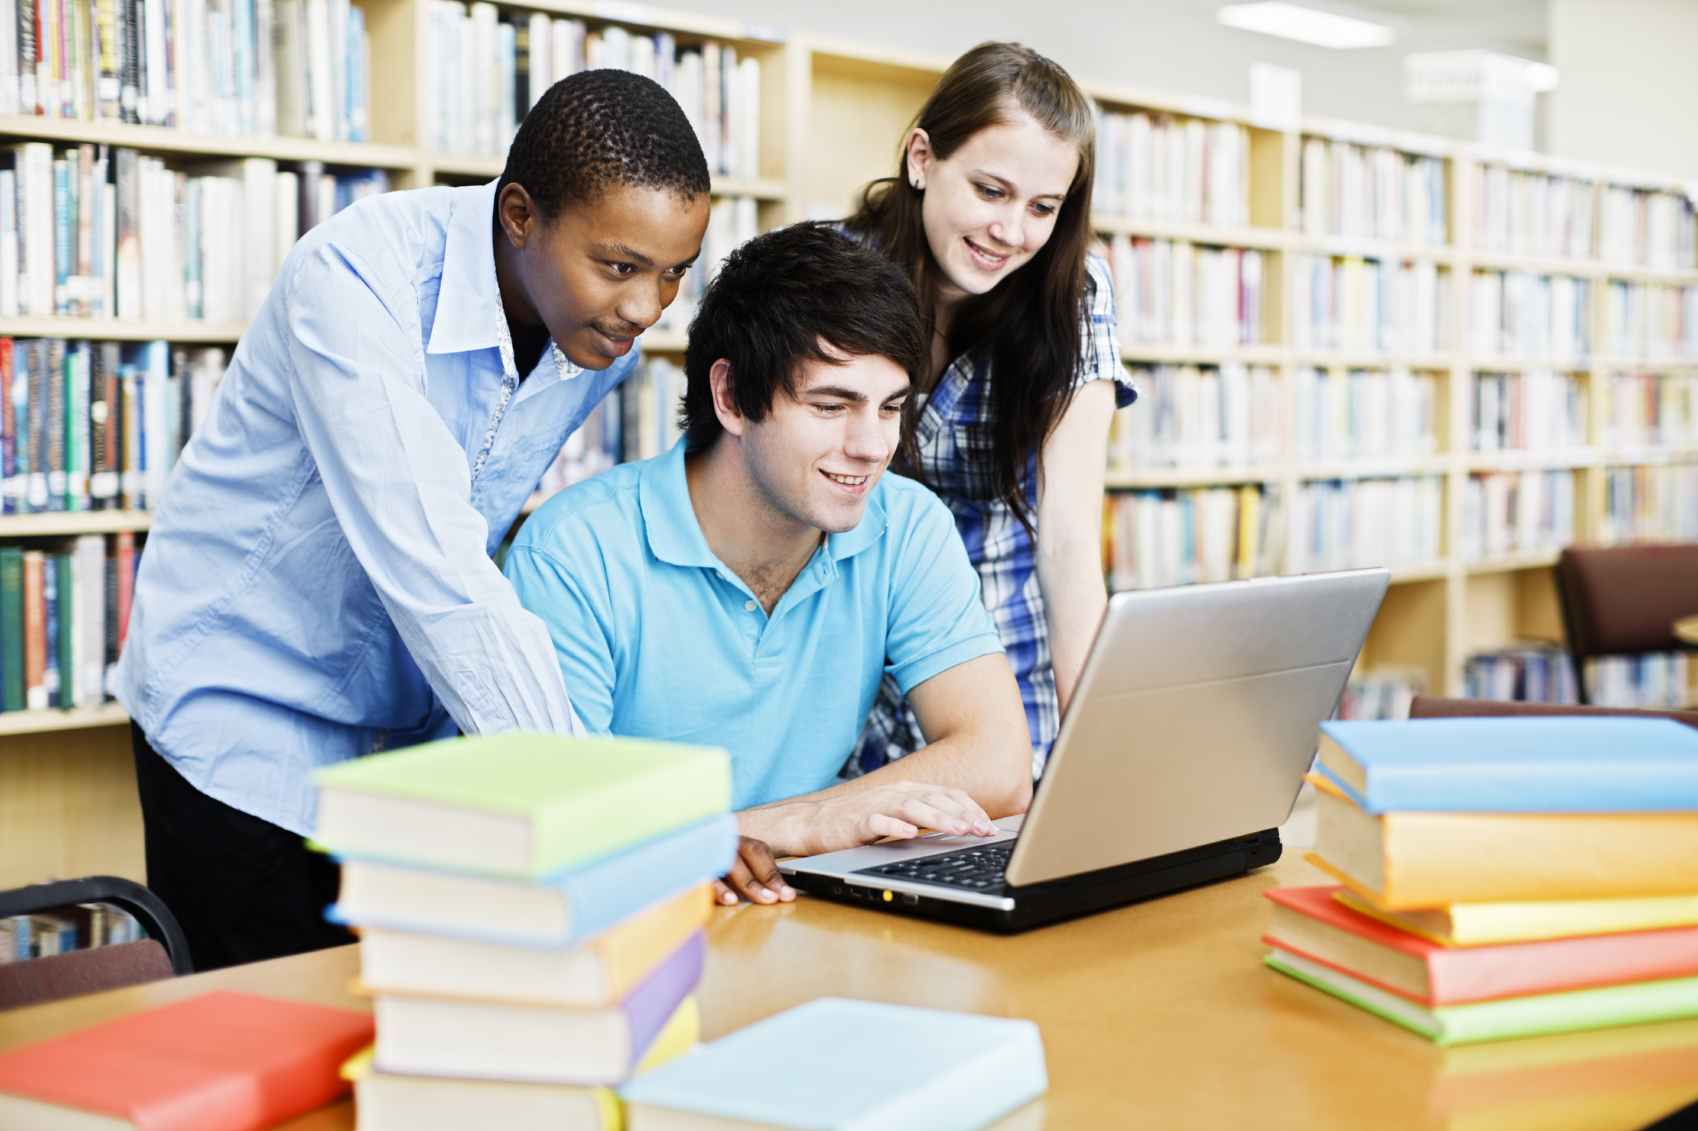 How students life. Студенты в библиотеке. Учащиеся студенты. Ученики в библиотеке. Студенты за компьютером в библиотеке.